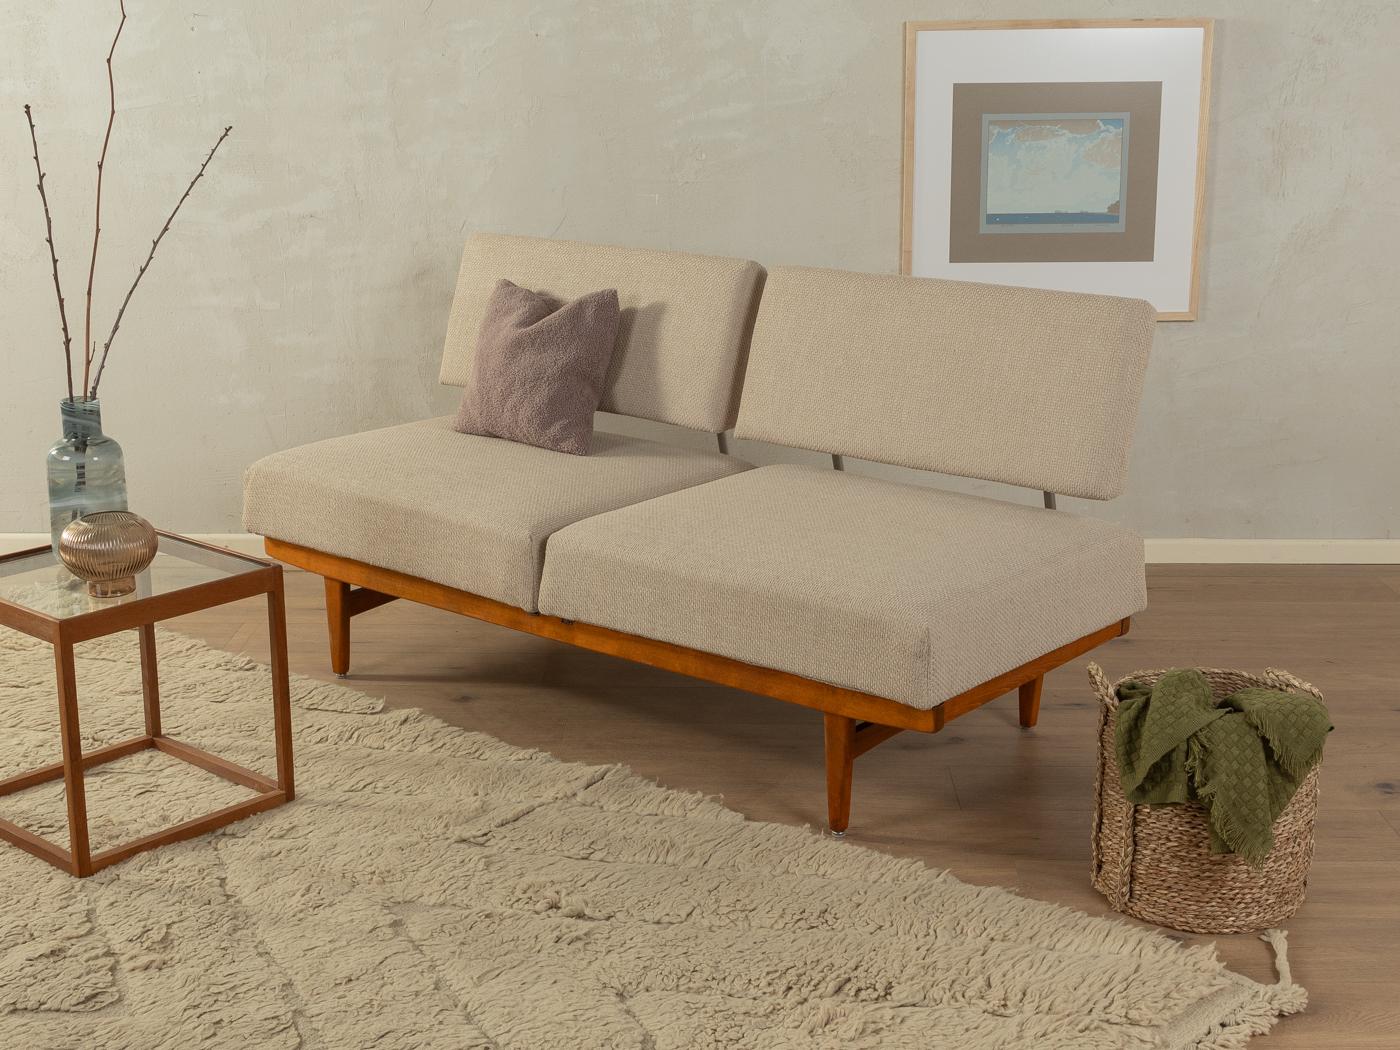 Wunderschönes Sofa aus den 1950er Jahren. Hochwertiger Massivholzrahmen aus Buche. Mit wenigen Handgriffen lässt sich das Sofa in ein Gästebett verwandeln. Der originale Federkern wurde neu gepolstert und mit einem hochwertigen Polsterstoff in Beige